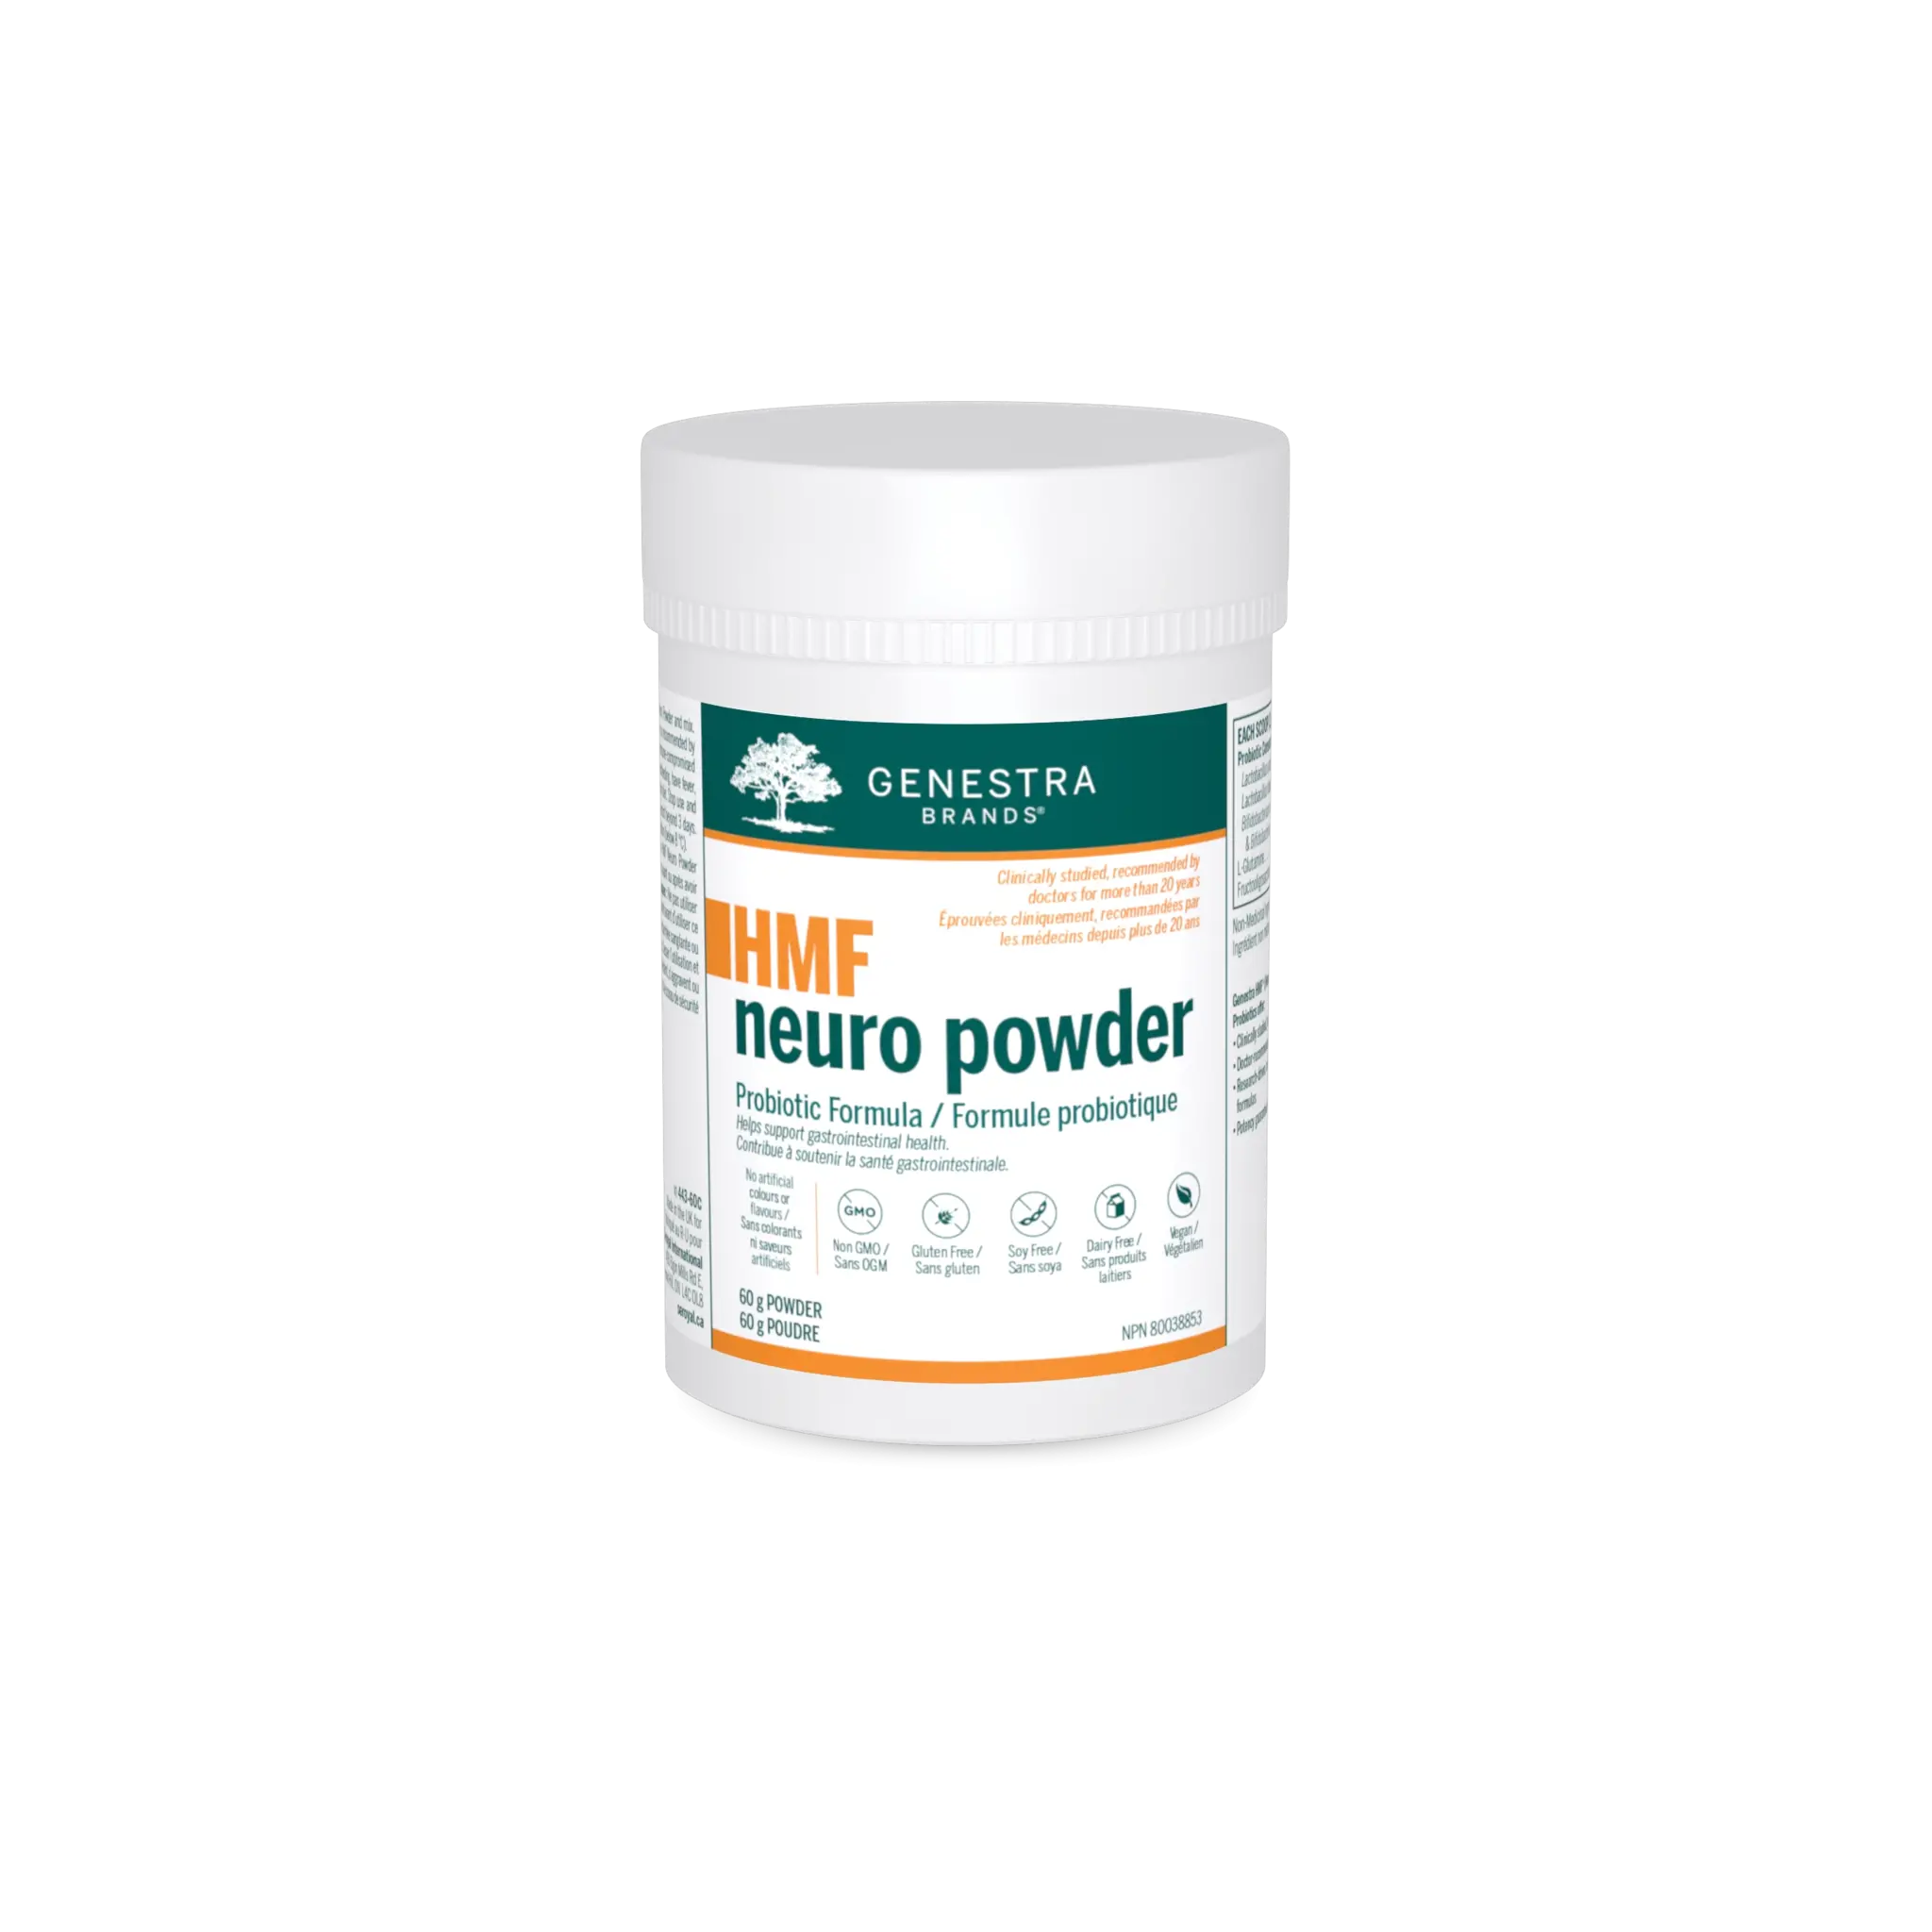 Genestra HMF Neuro Powder Probiotic Formula 60g